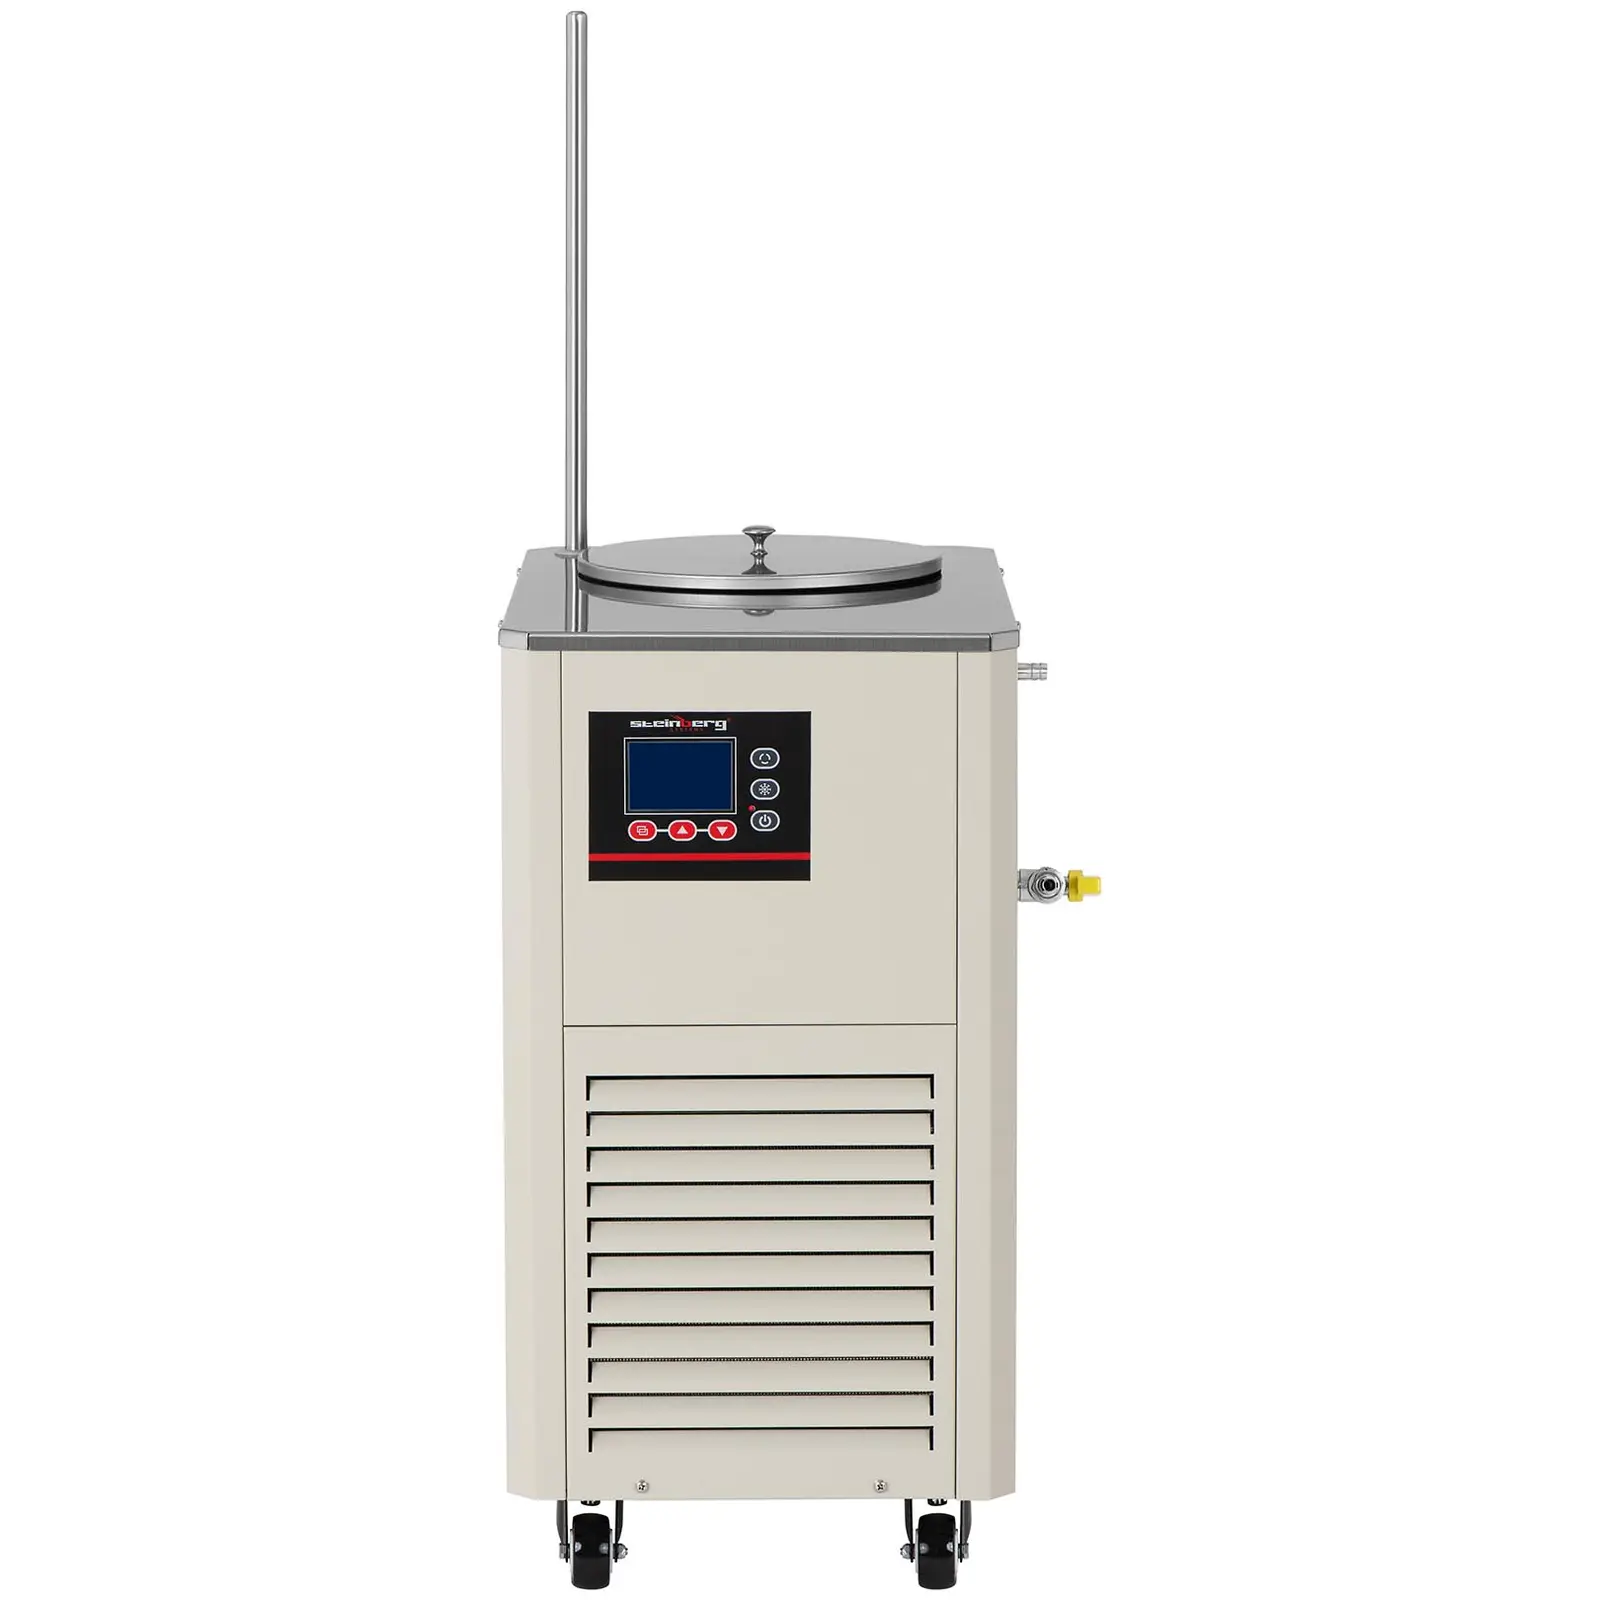 Rinfrescatore aria a circolazione - Compressore: 726 W - Da -20 a 20℃ - 20 L/min